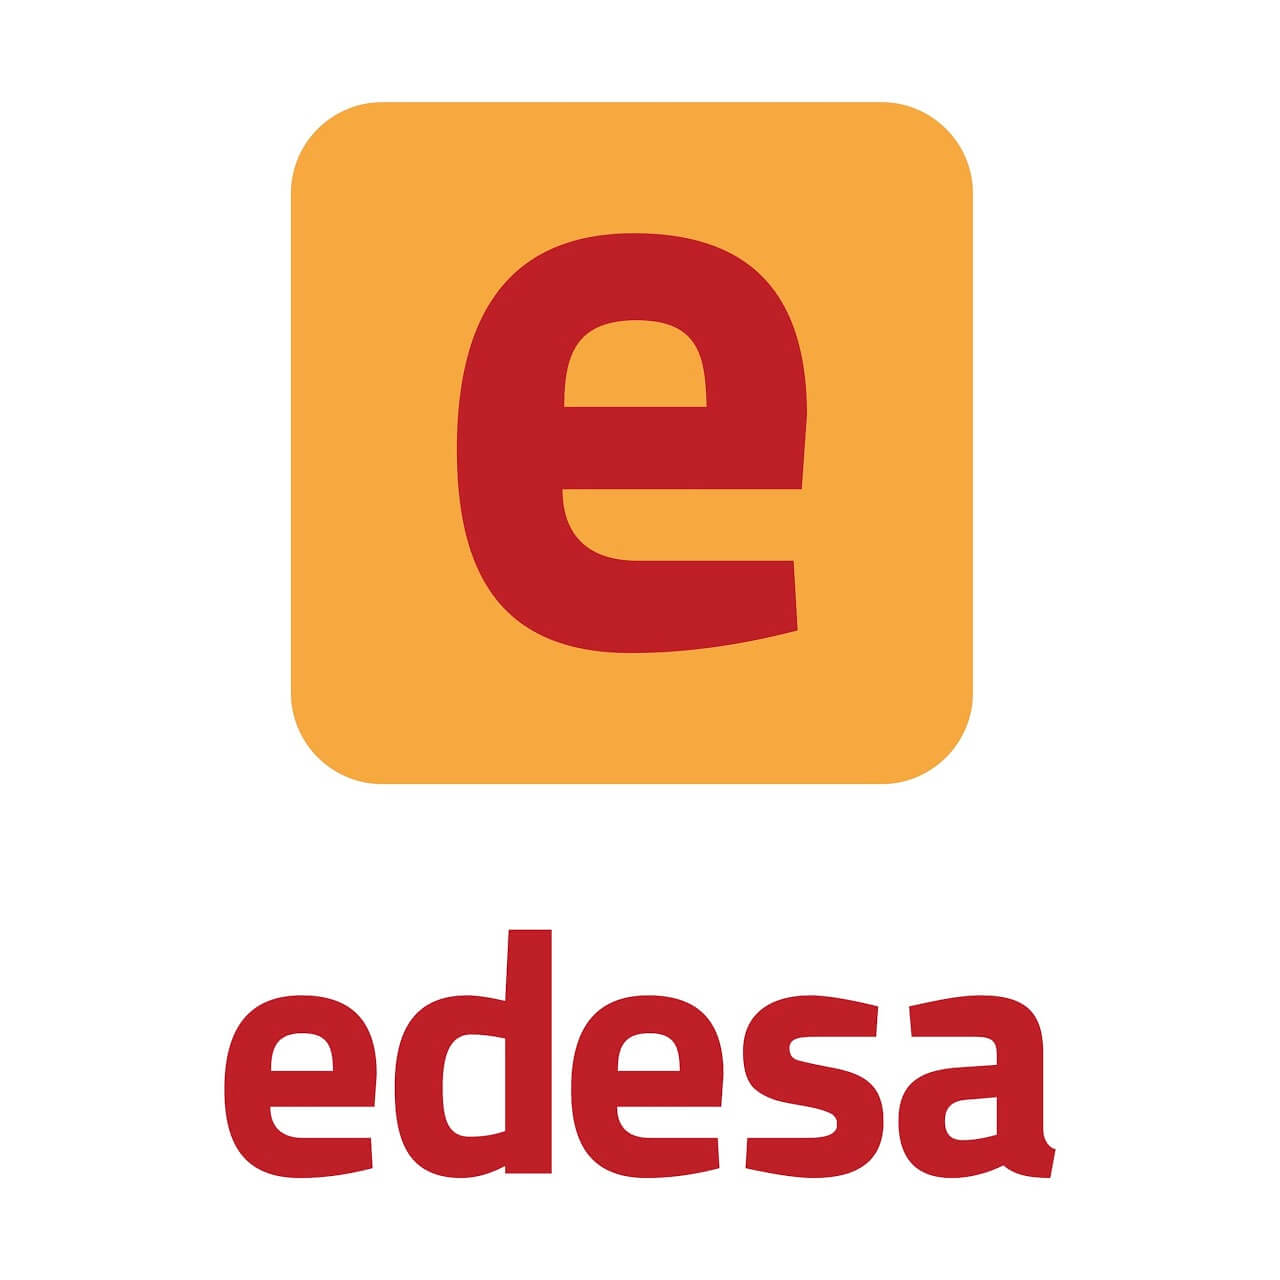 edesa_logo.d663efb5